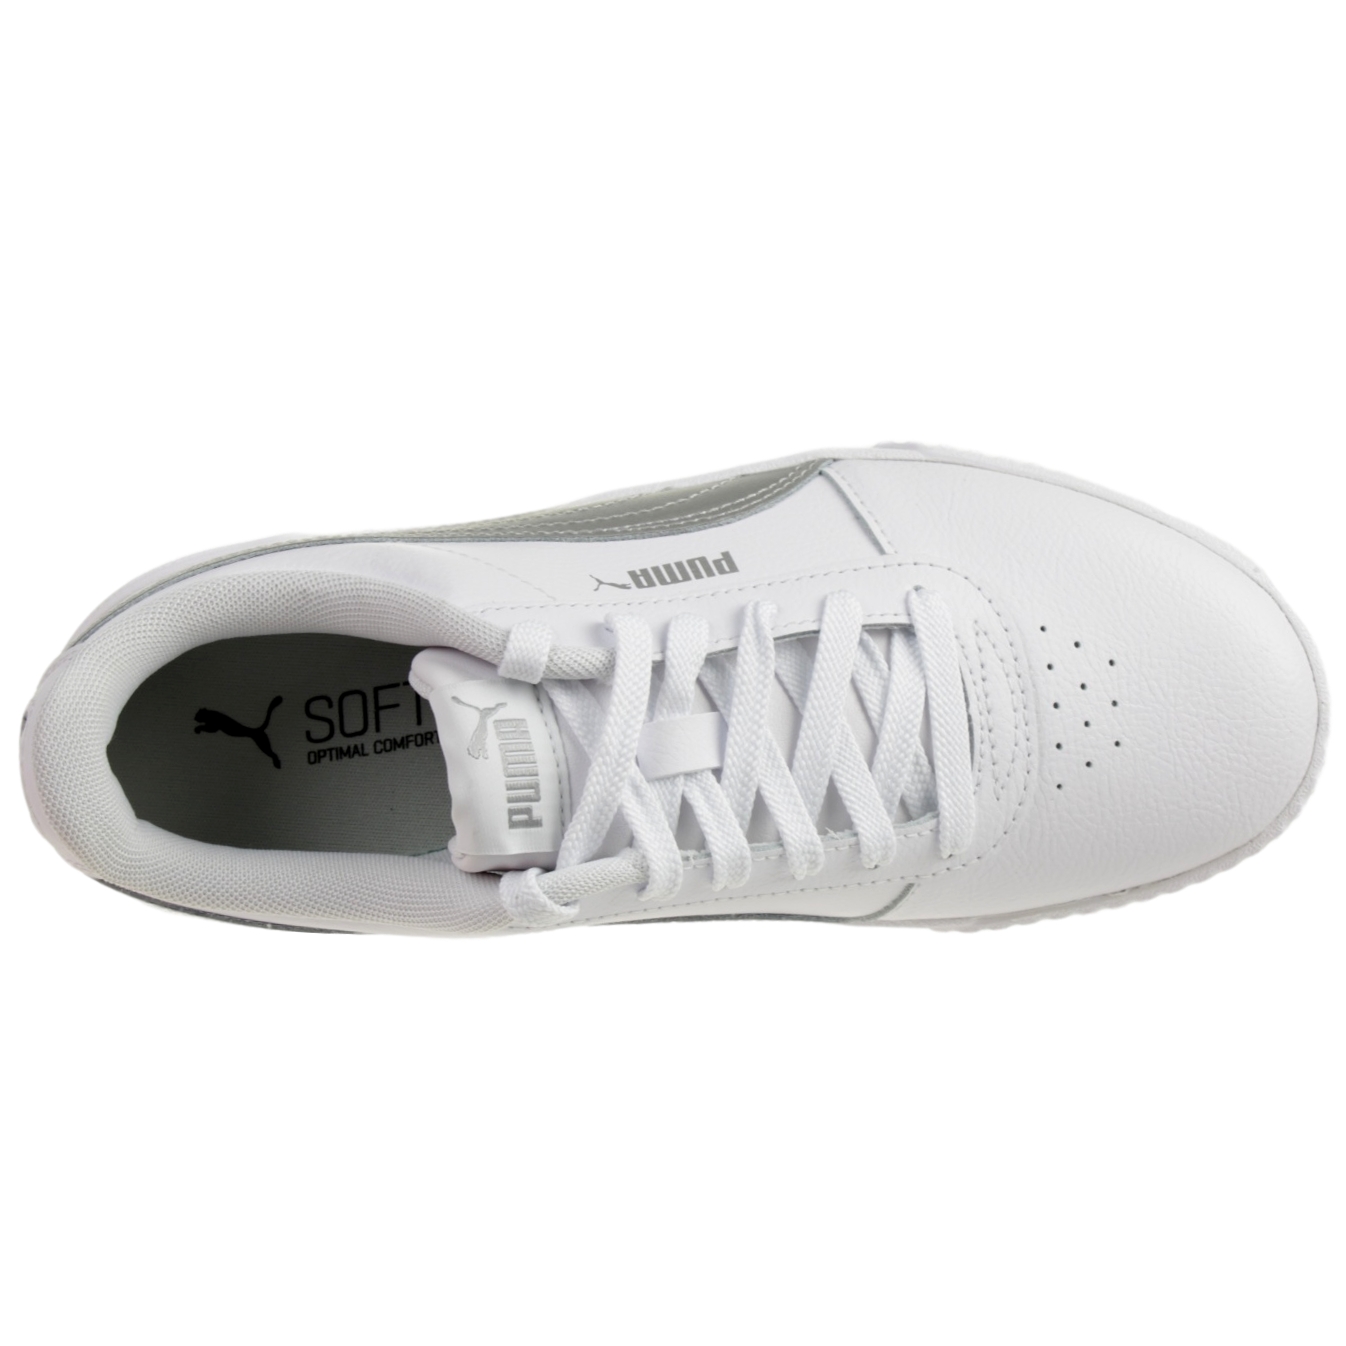 Puma Carina L Damen Sneaker Leder Schuhe Weiß / Silber 370325 18